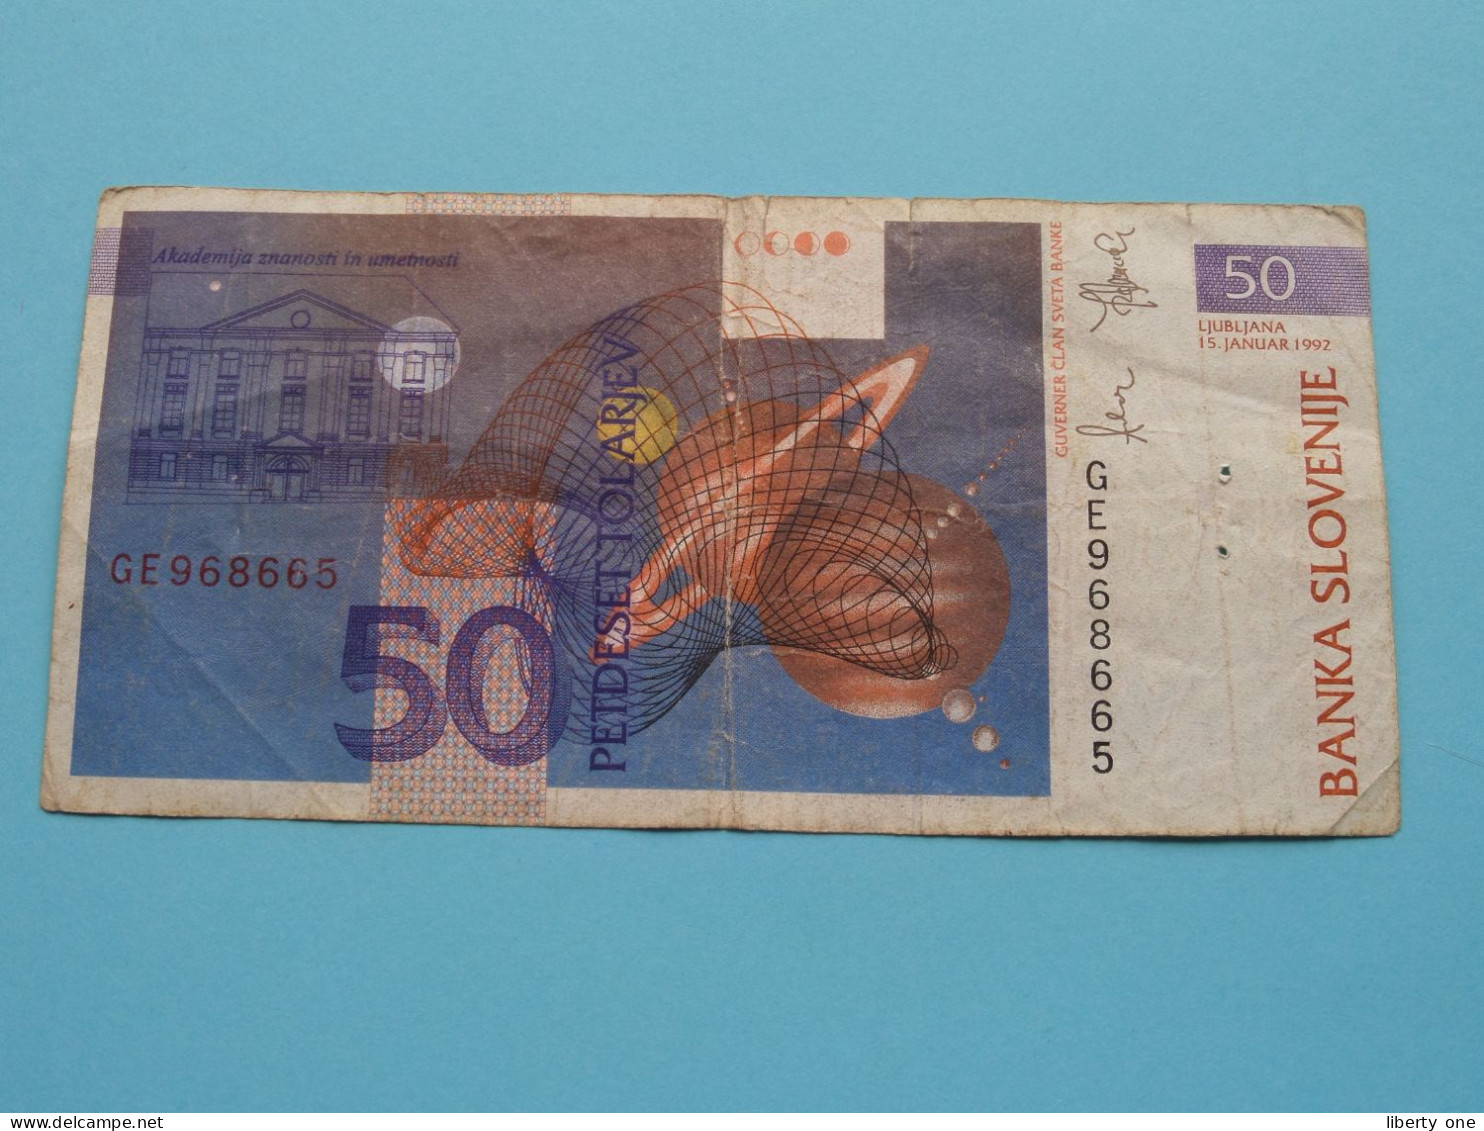 50 Tolarjev ( GE968665 ) Banka Slovenije - 1992( For Grade See SCAN ) Circulated ! - Slovenië